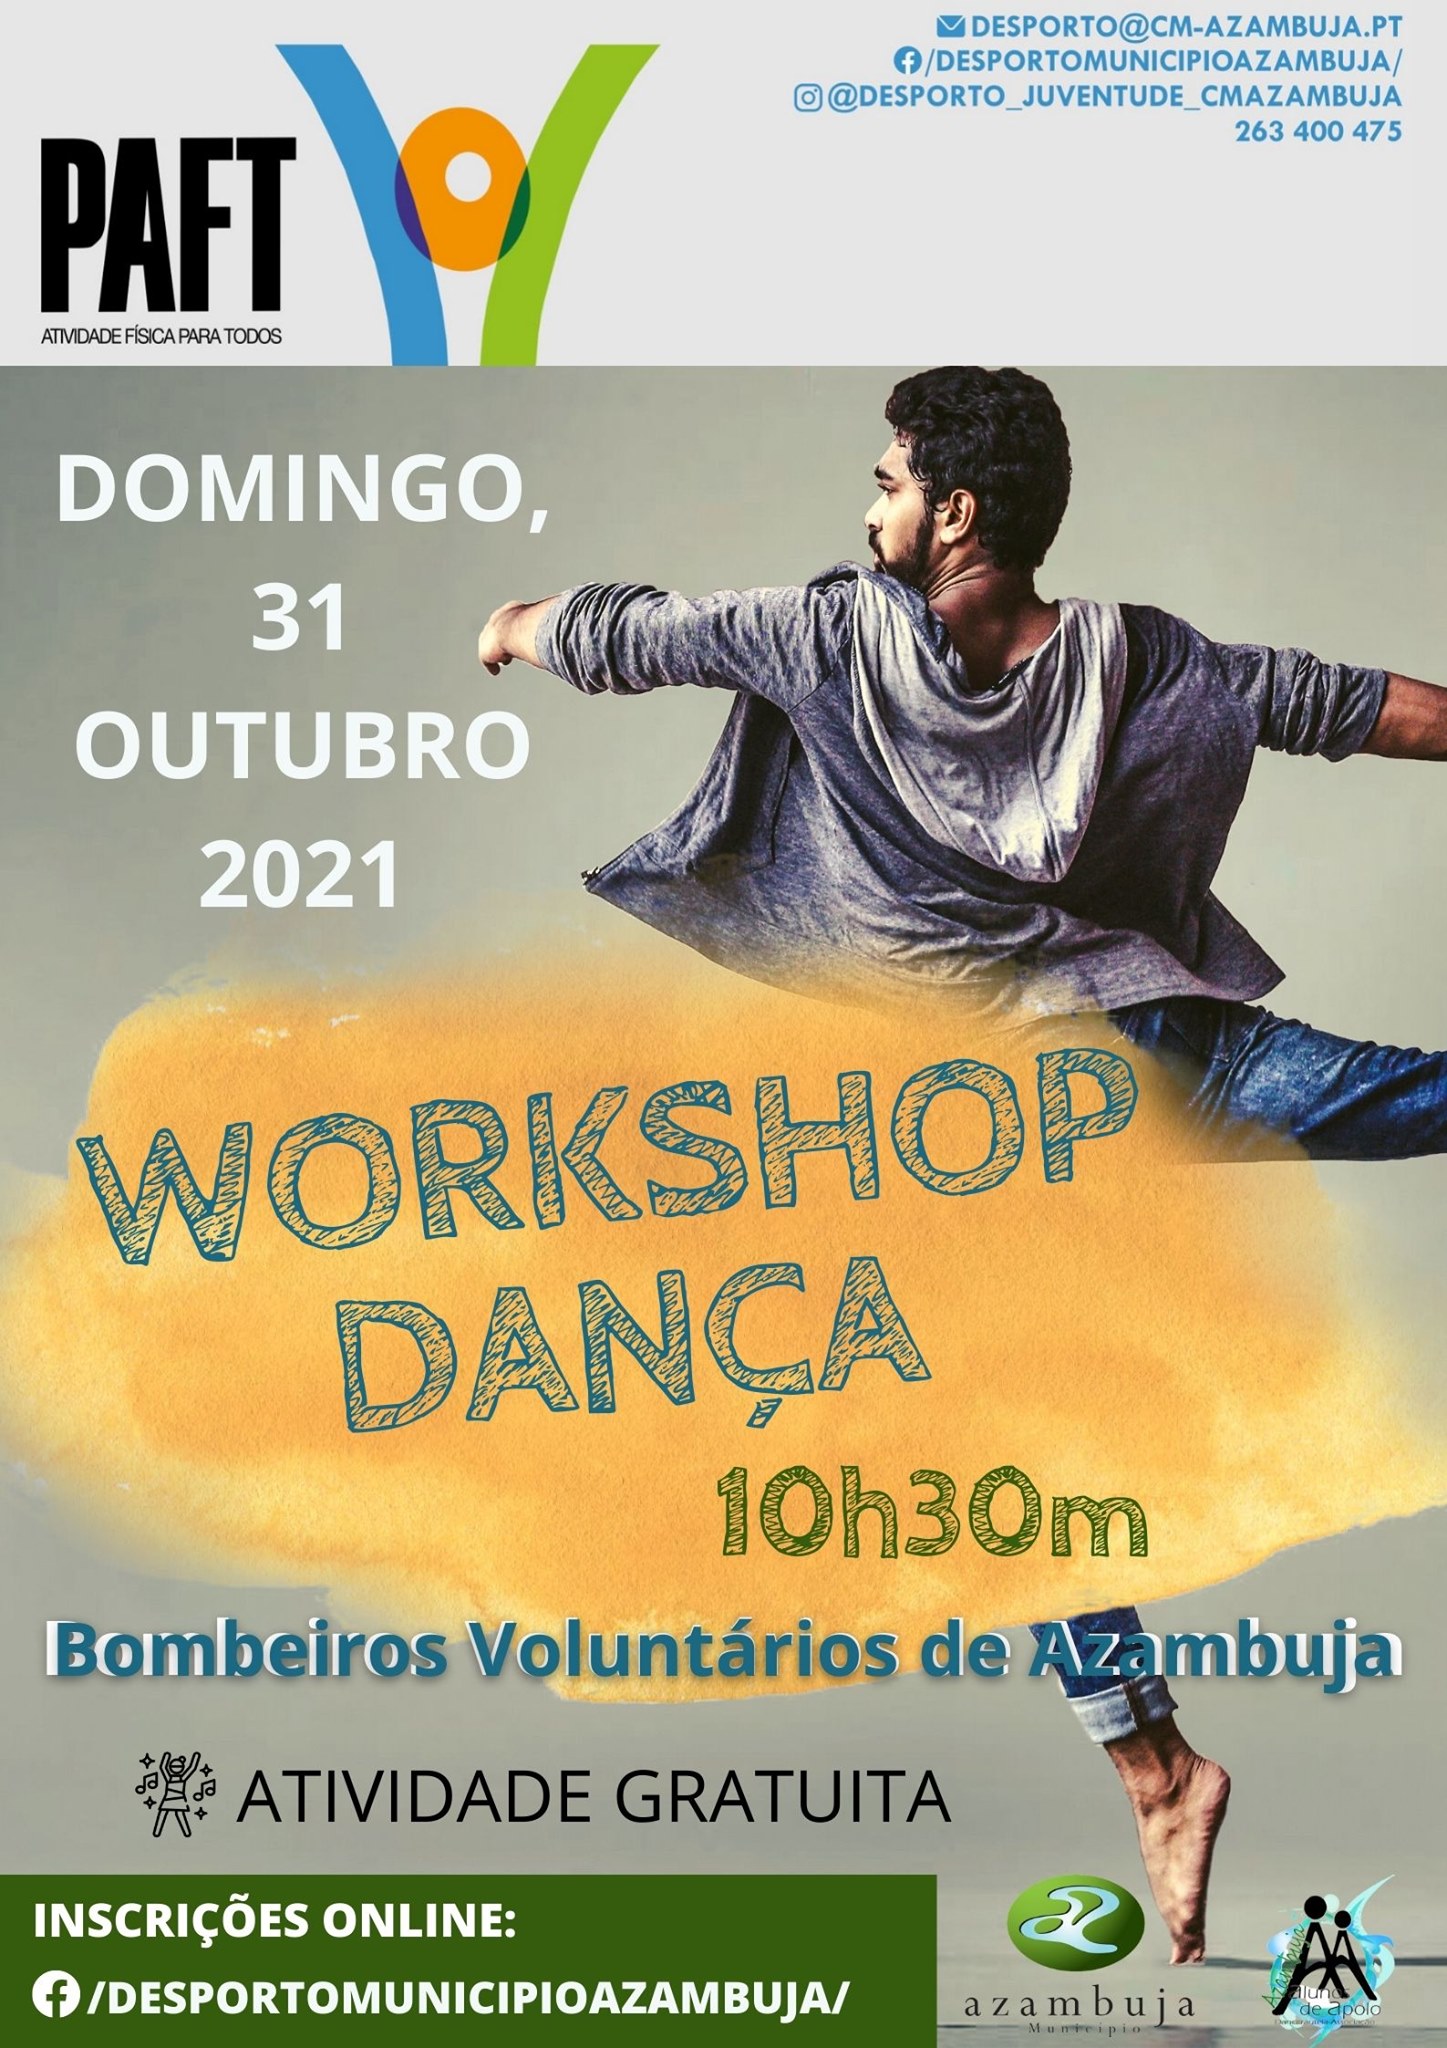 Workshop de Dança